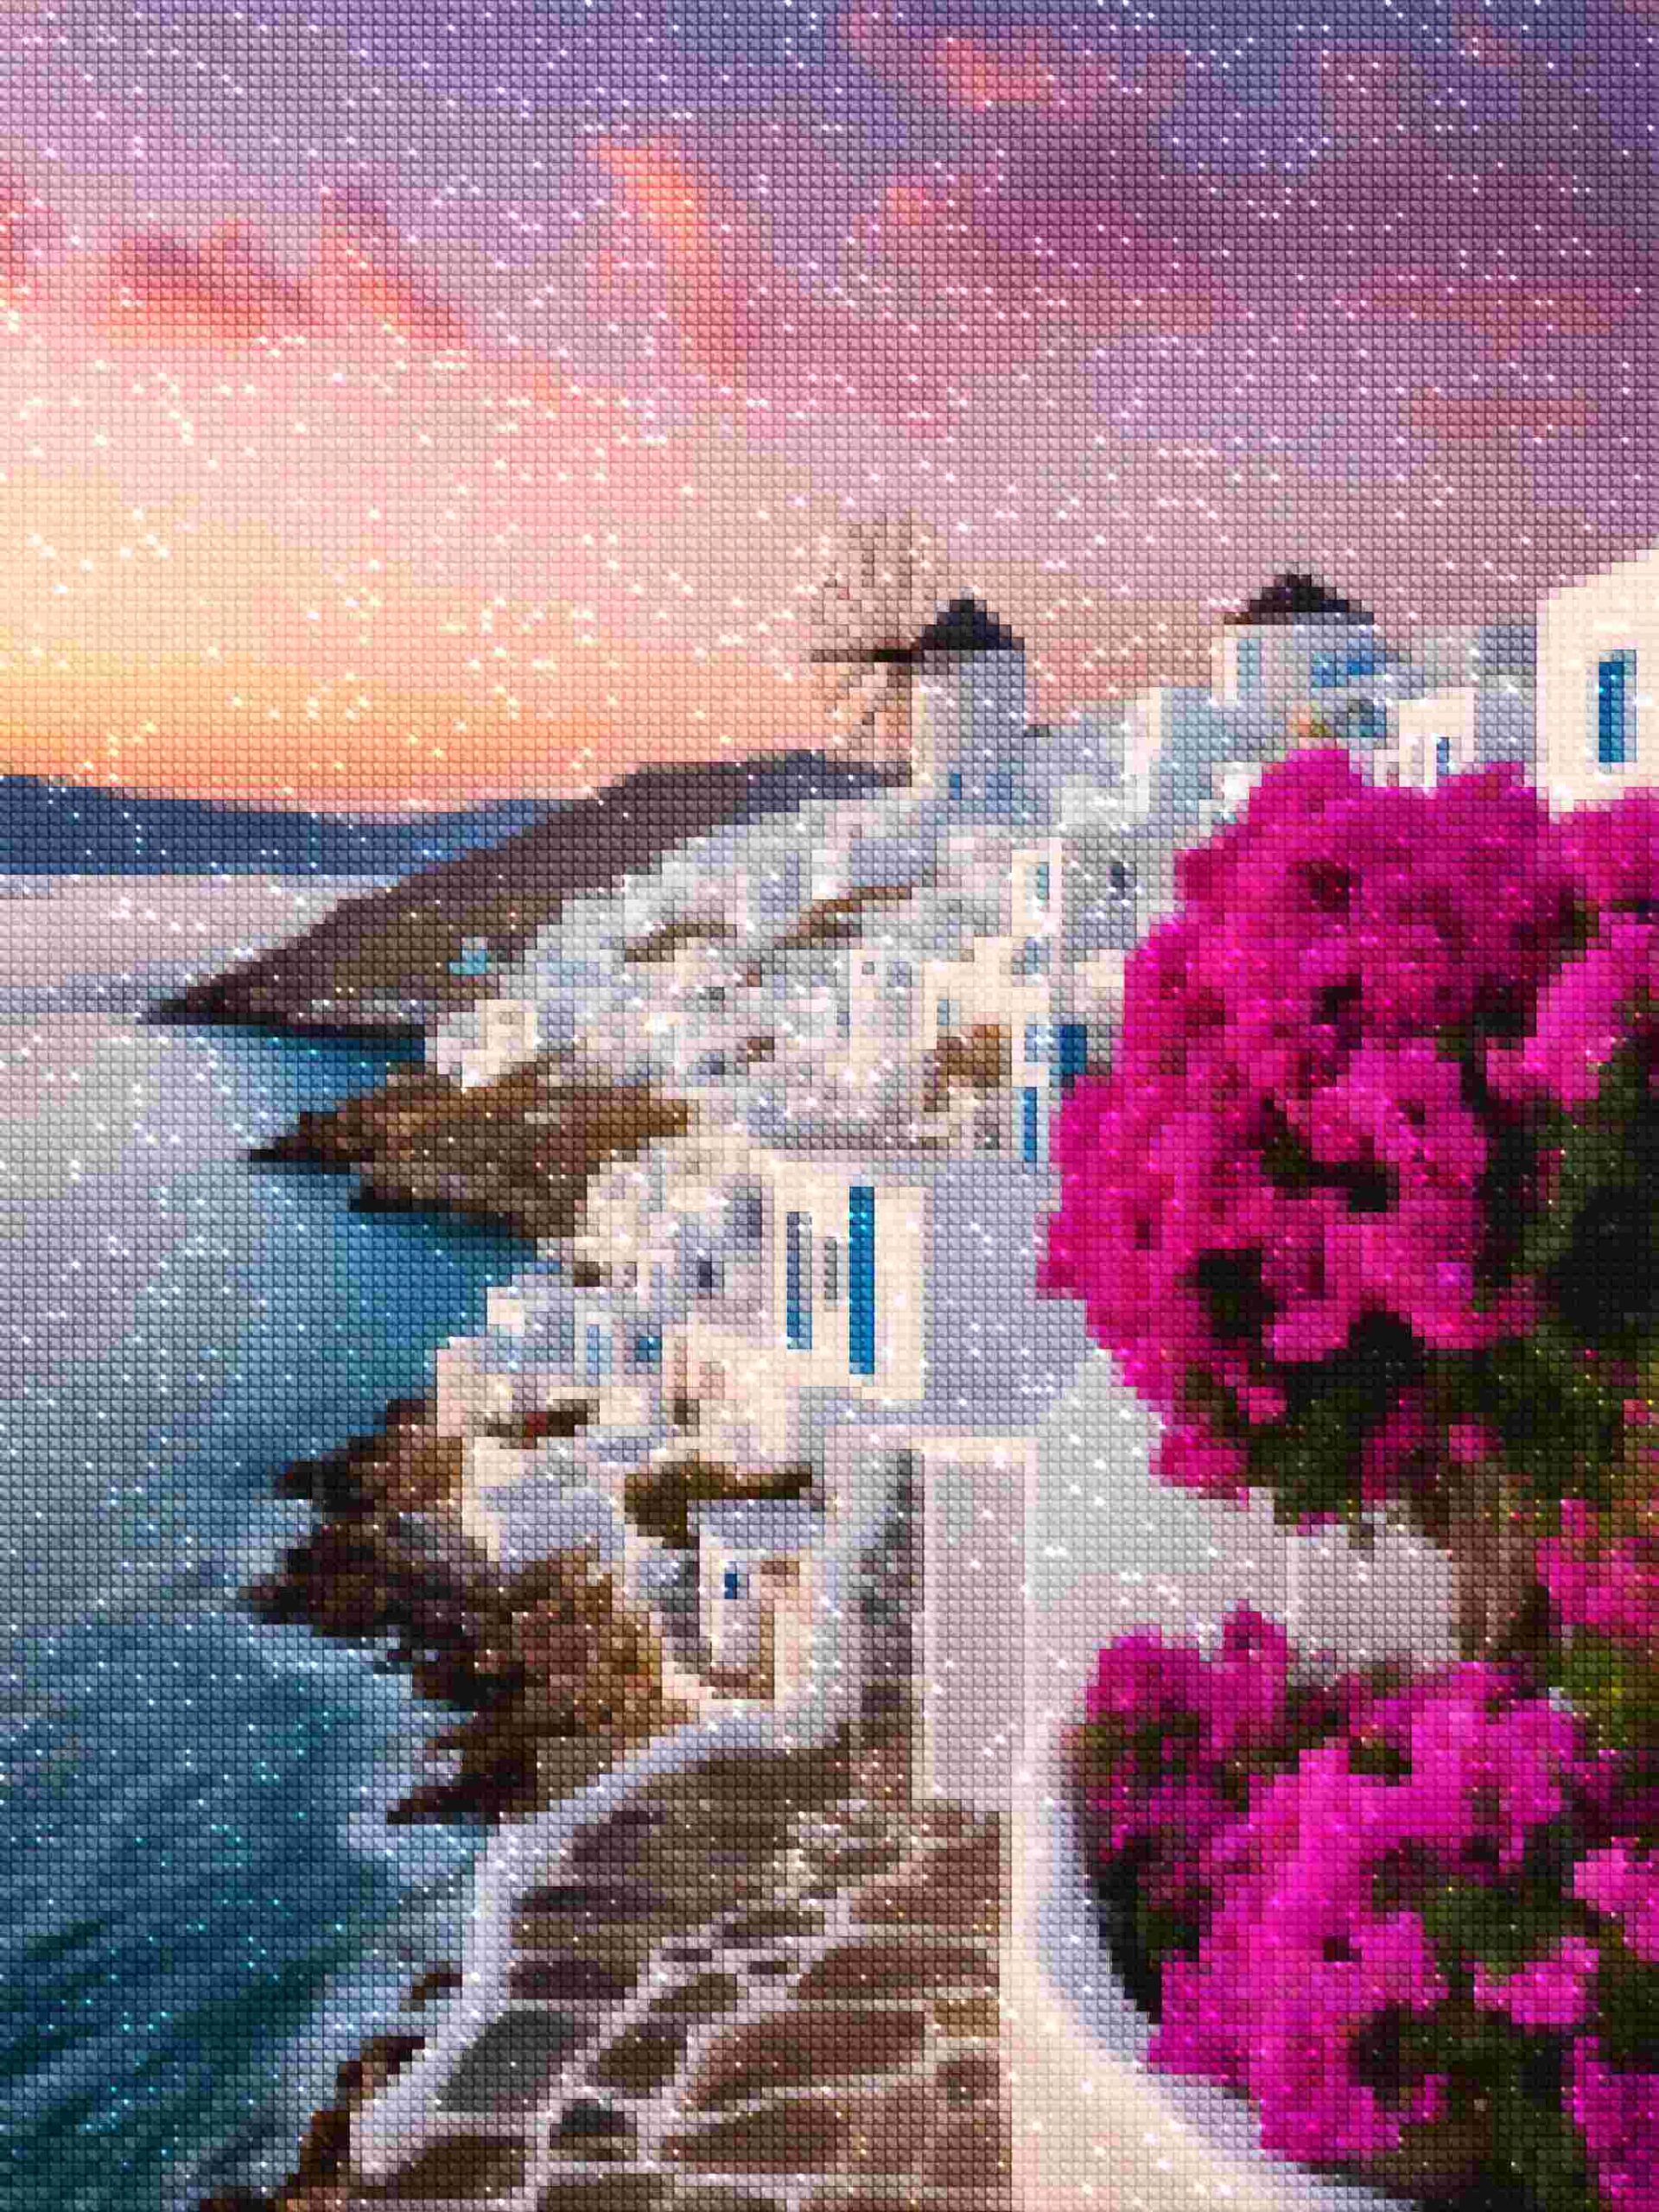 asistente-de-diamantes-kits-de-pintura-de-diamantes-Viajes-Grecia-Mykonos-Molinos-de-viento-diamantes.jpg